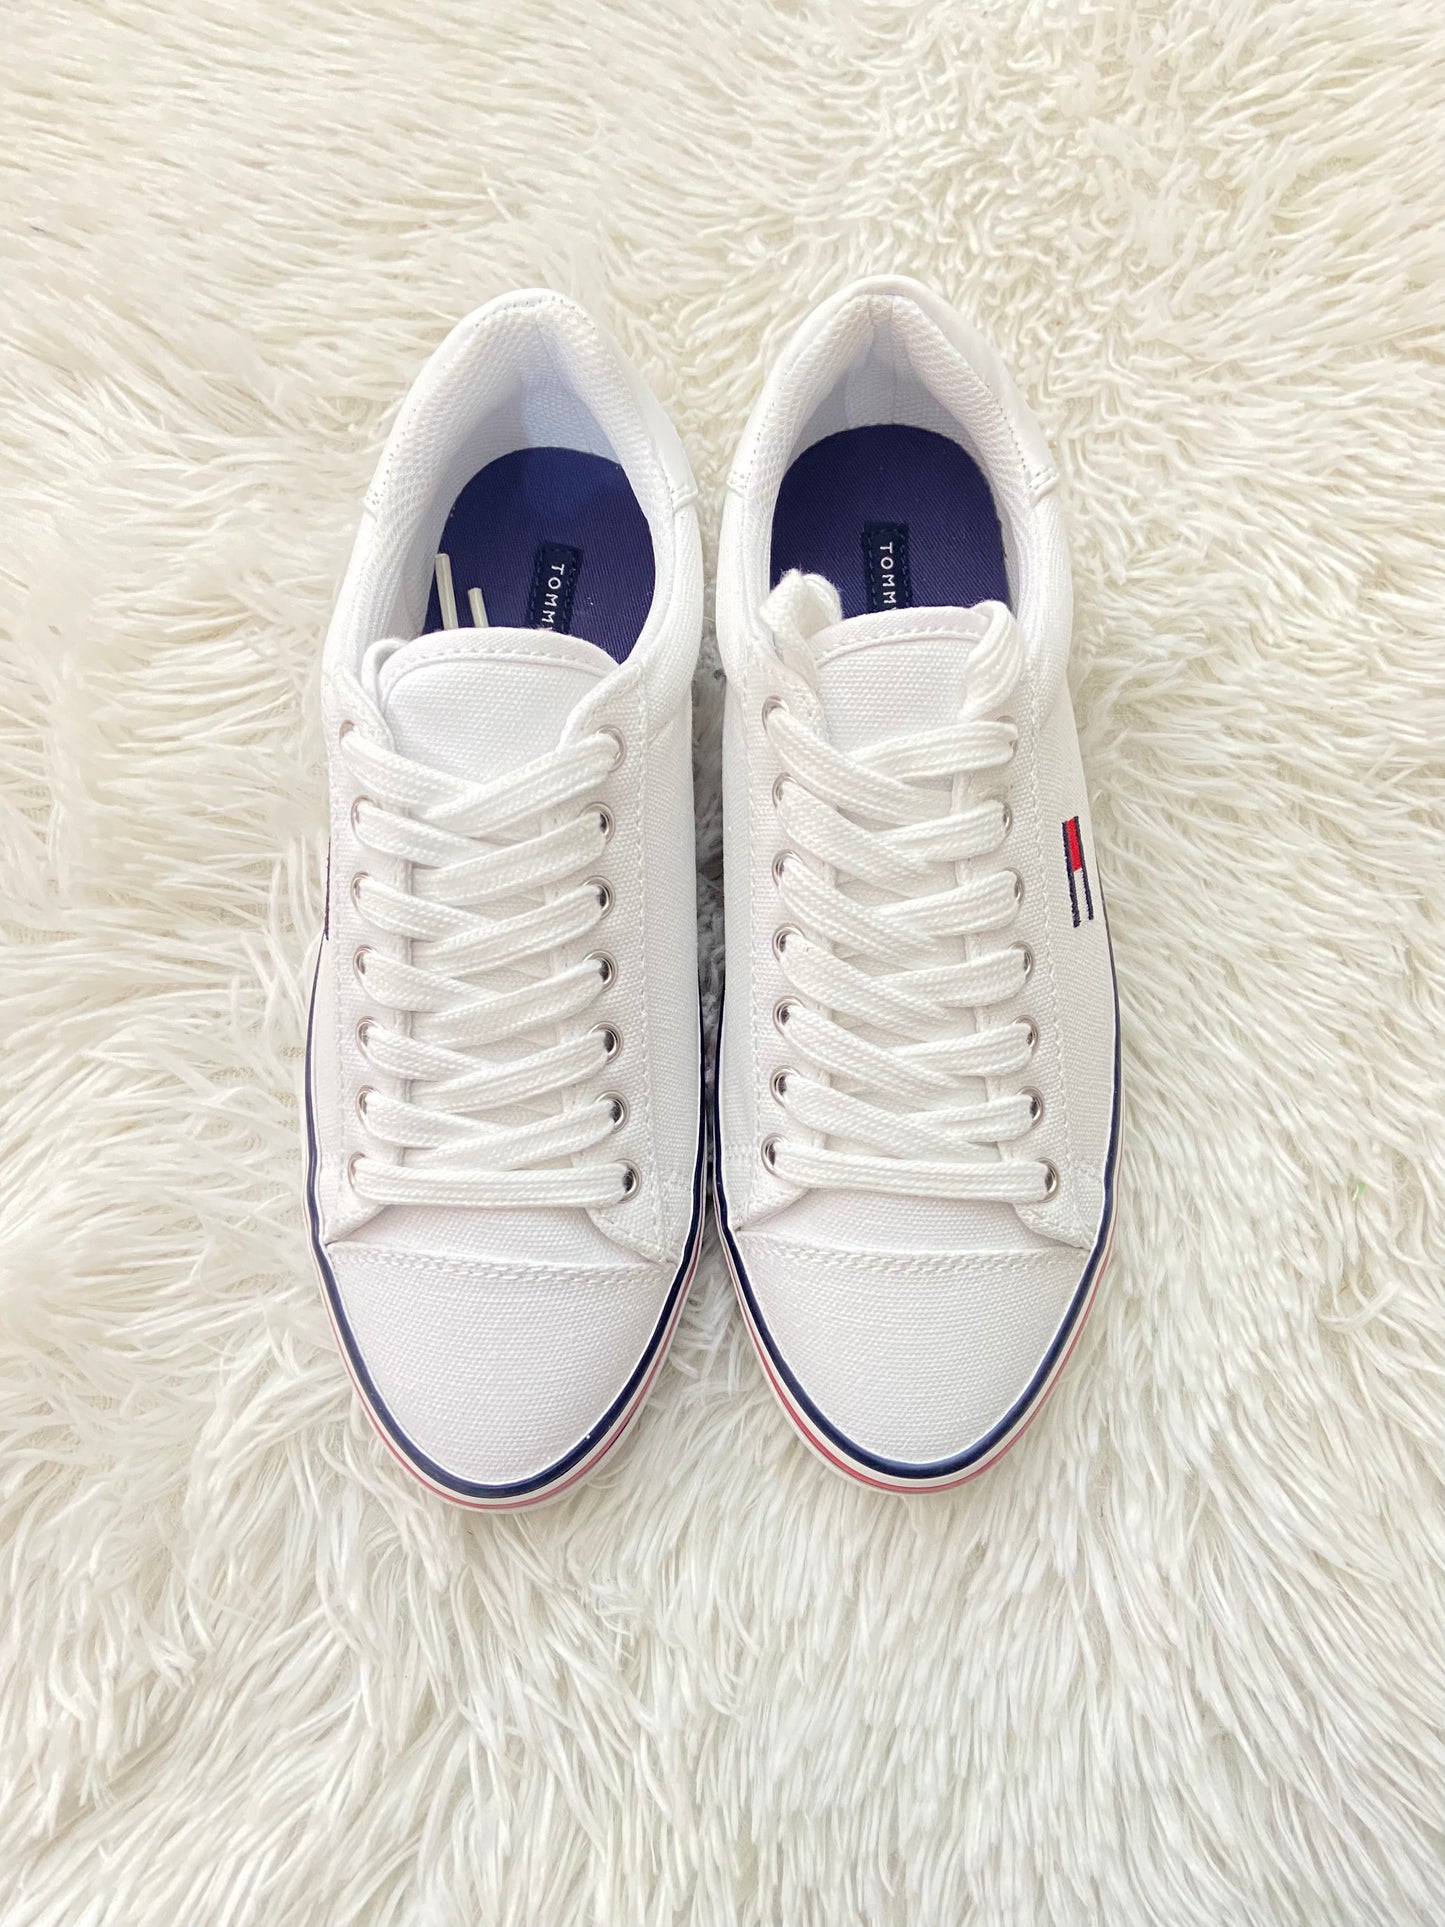 Tenis Tommy Hilfiger original en color blanco con rayas en color azul marino, blanco, rojo y pequeño logo tipo de la marca TOMMY HILFIGER en color azul marino,rojo,blanco